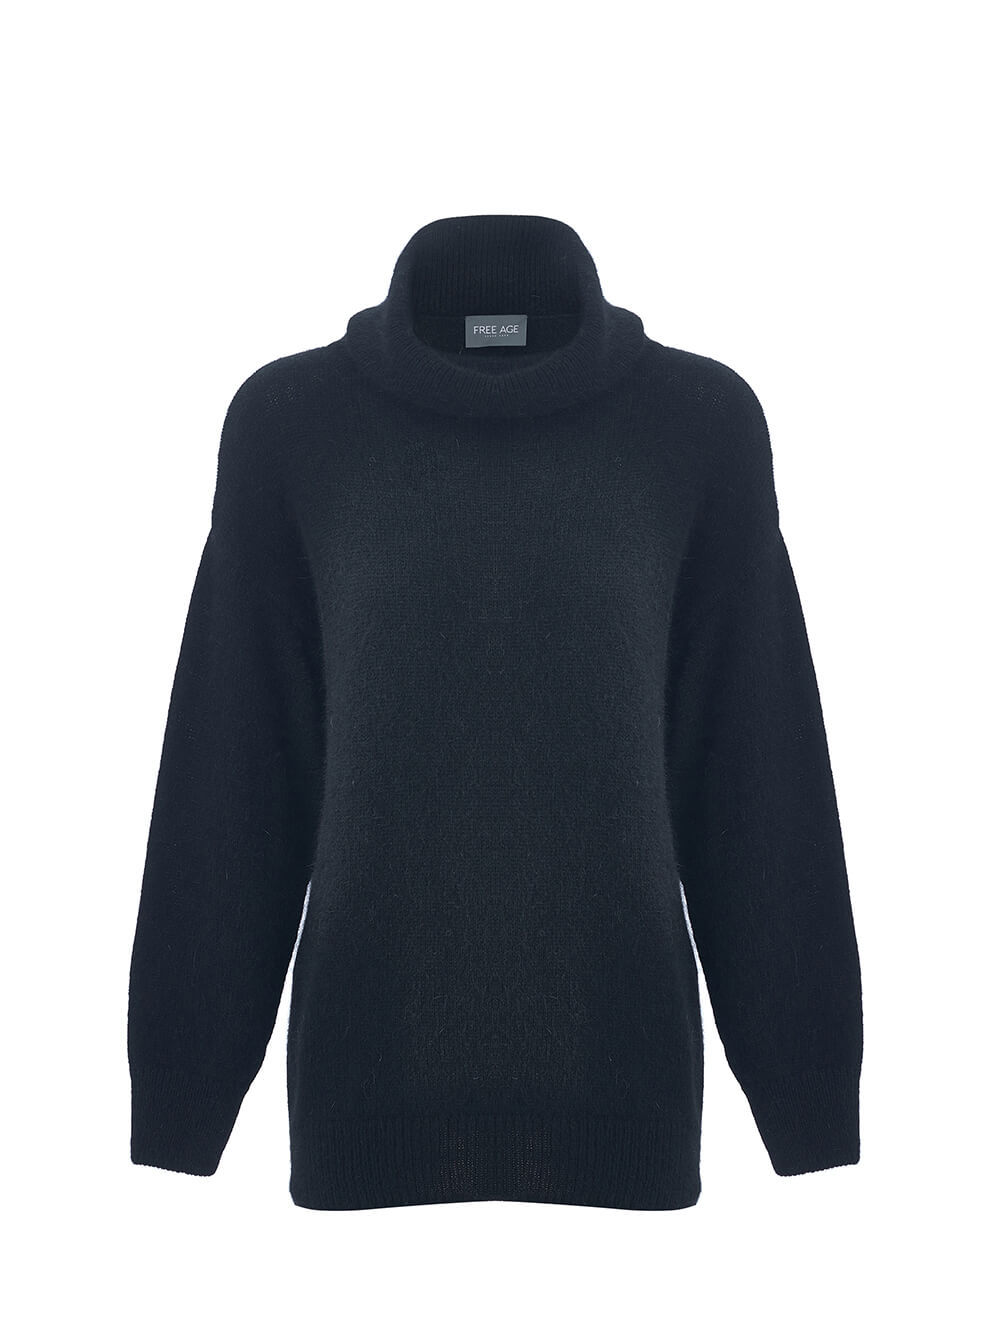 Женский свитер черного цвета из ангоры - фото 1